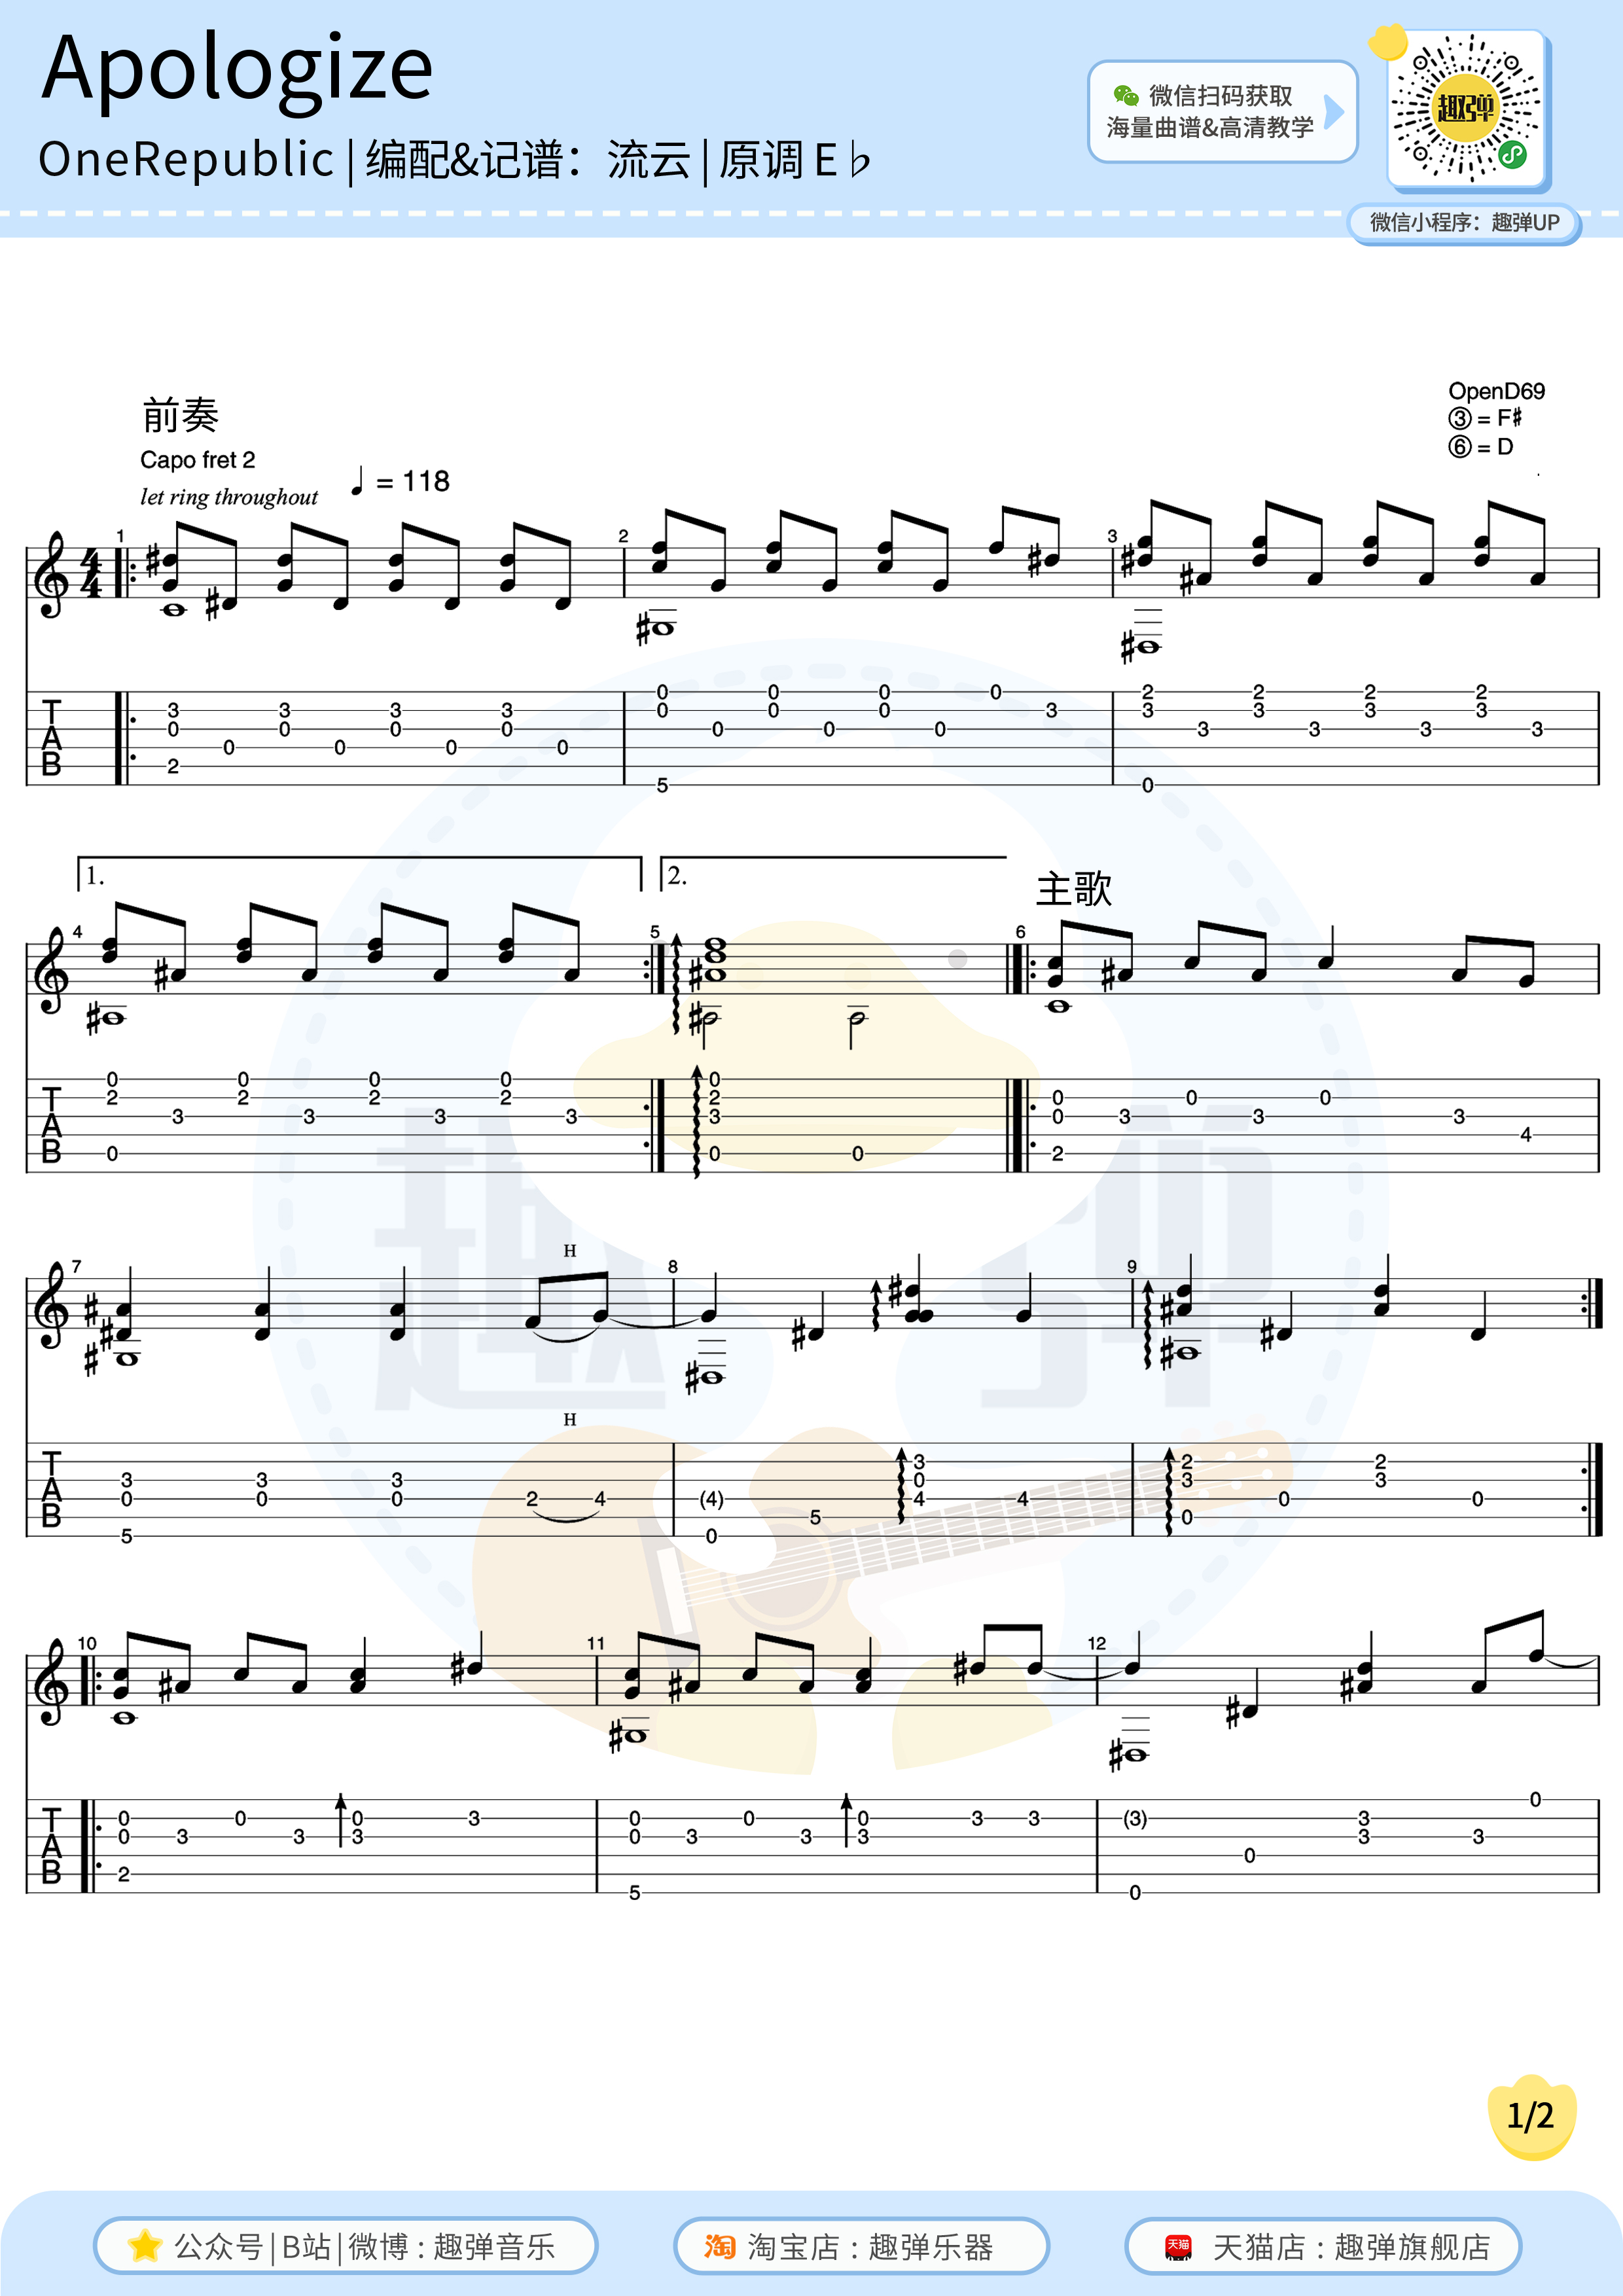 Belajar Chord Gitar Apologize dengan Mudah » TAB